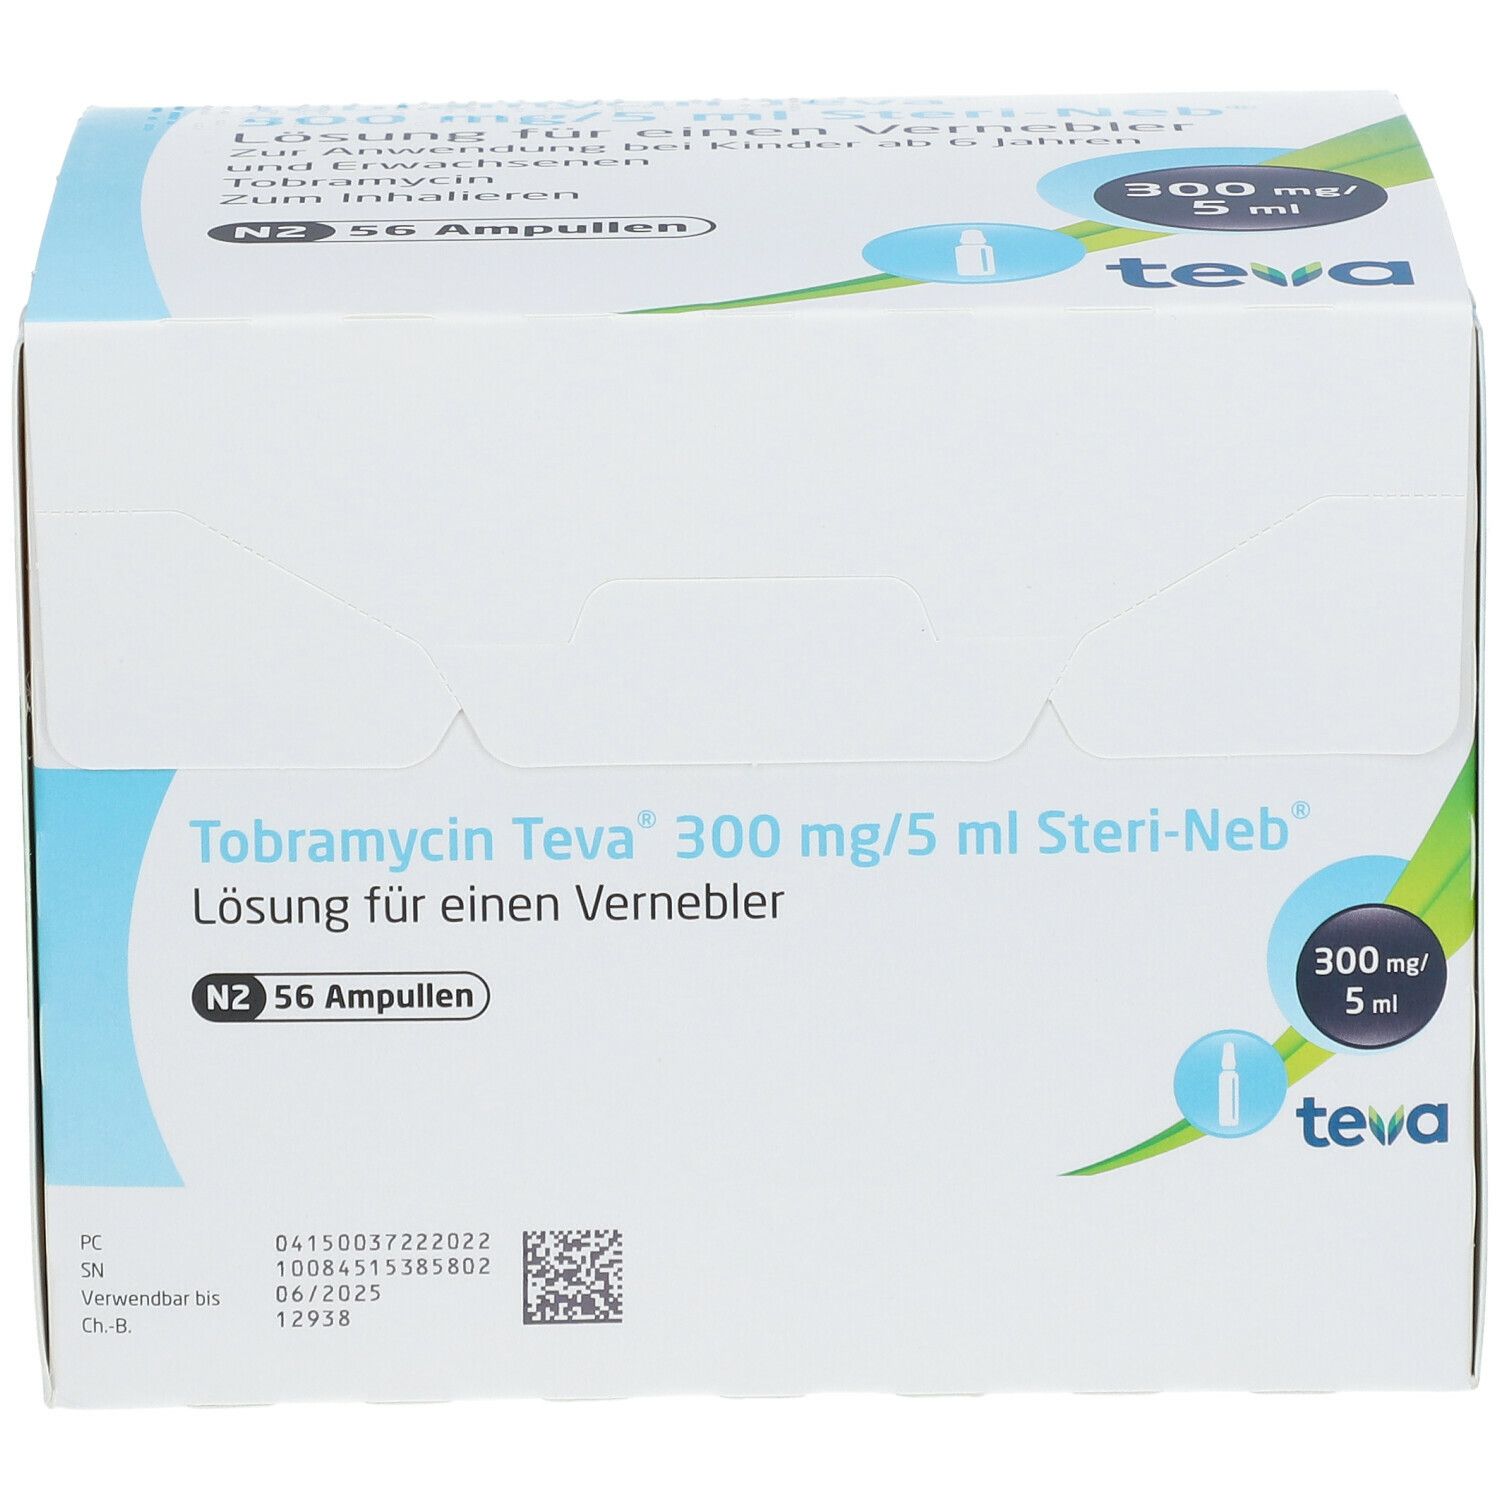 Tobramycin Teva® 300 mg/5 ml Steri-Neb®